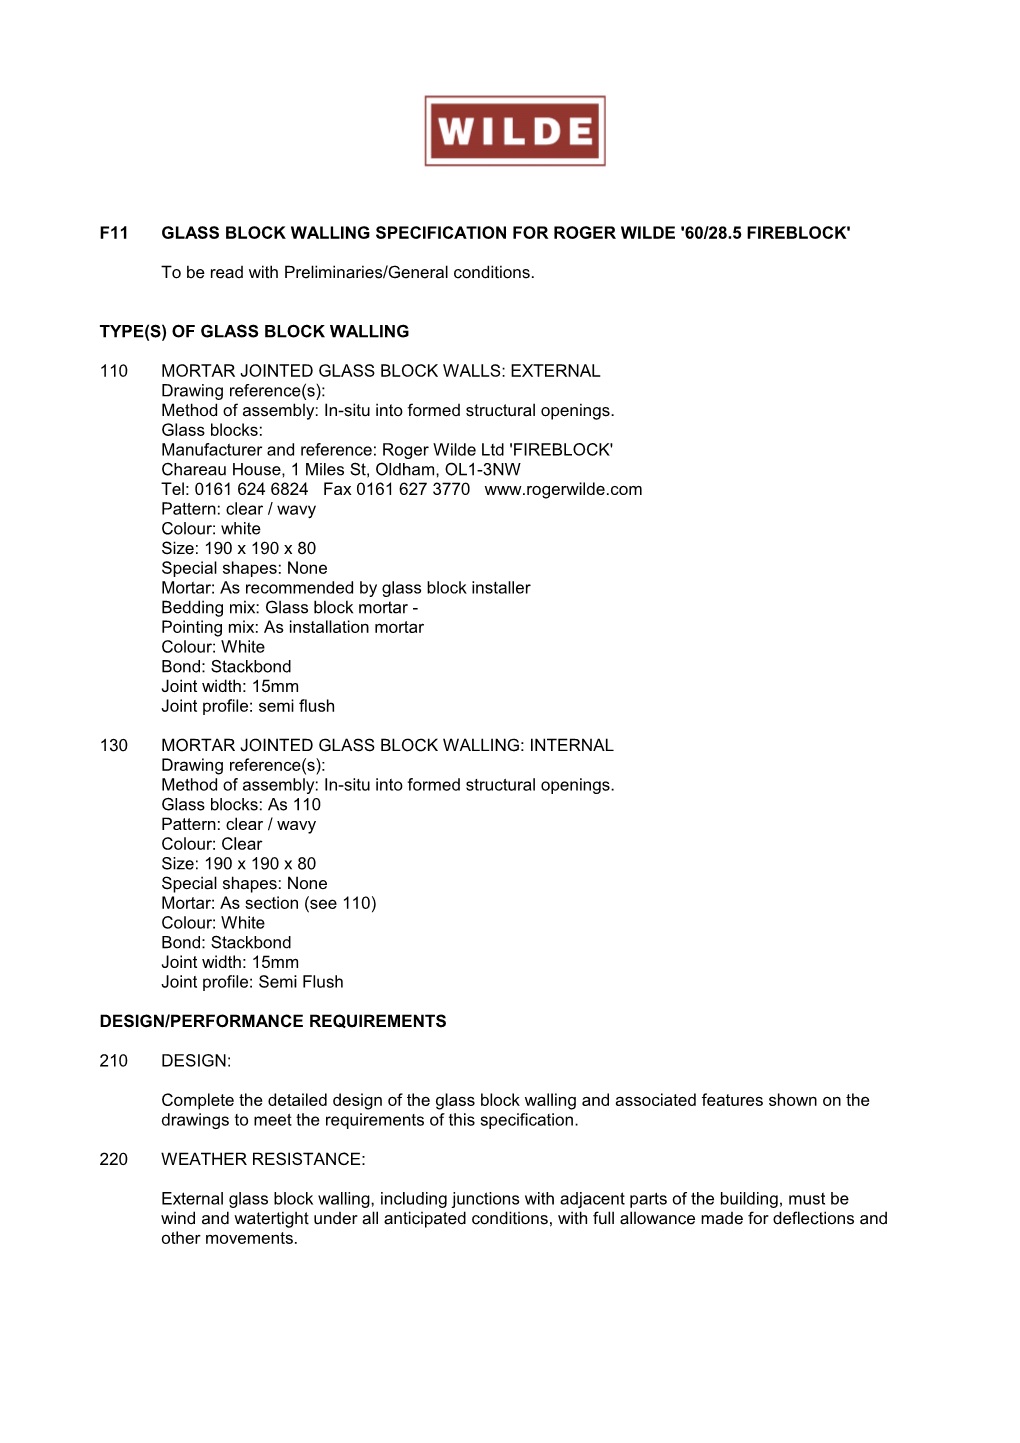 F11glass Block Walling Specification for Roger Wilde '60/28.5 Fireblock'